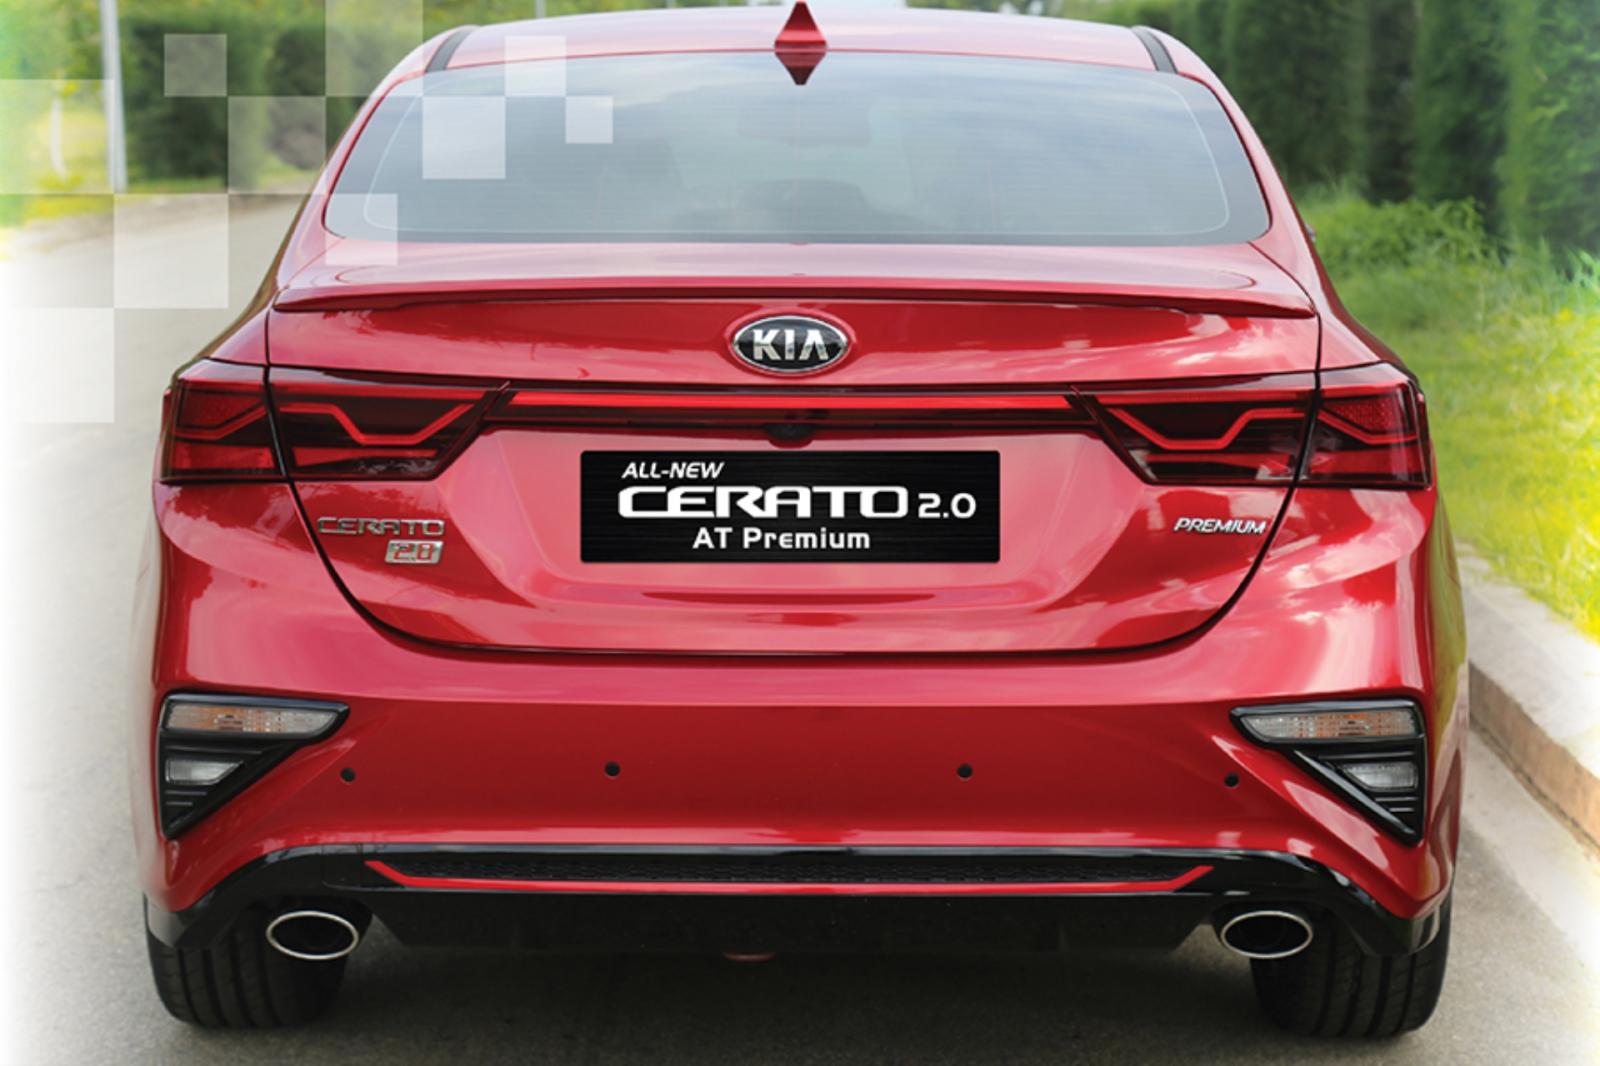 Chính thức: Kia Cerato 2.0 AT Premium bản nâng cấp ra mắt Việt Nam a2